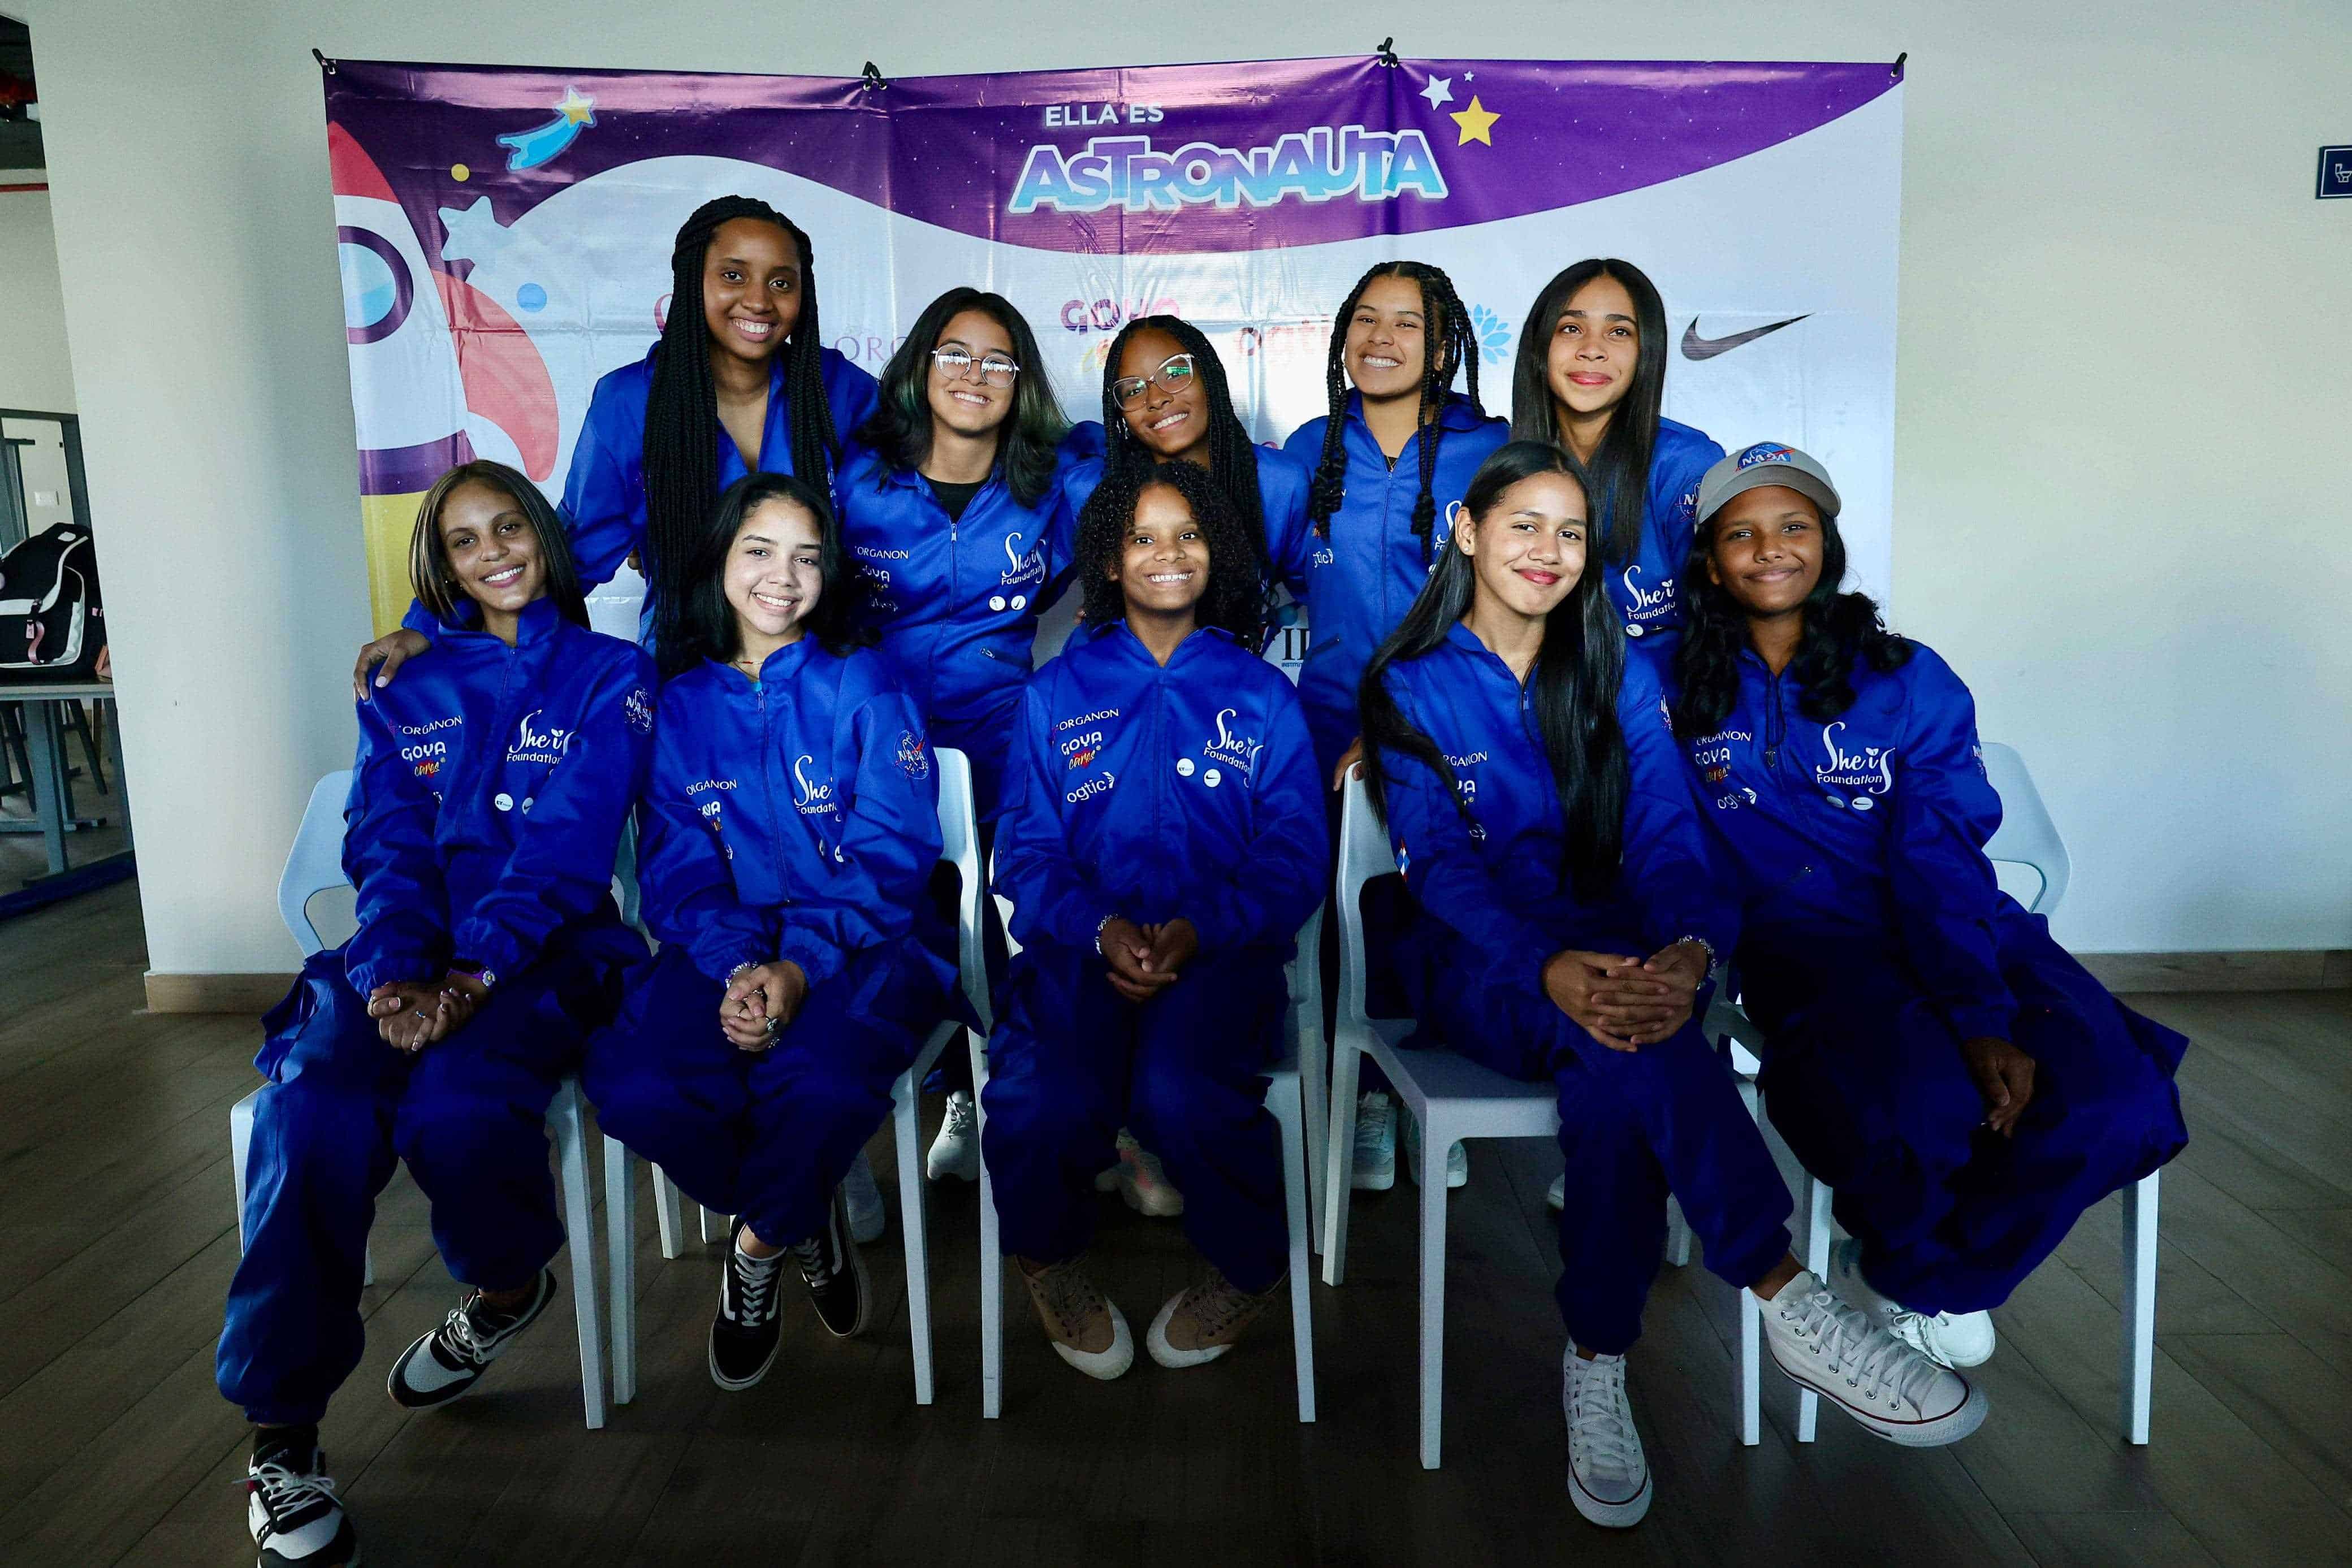 Las 10 jóvenes estudiantes que participan en la segunda misión de Ella es astronauta.